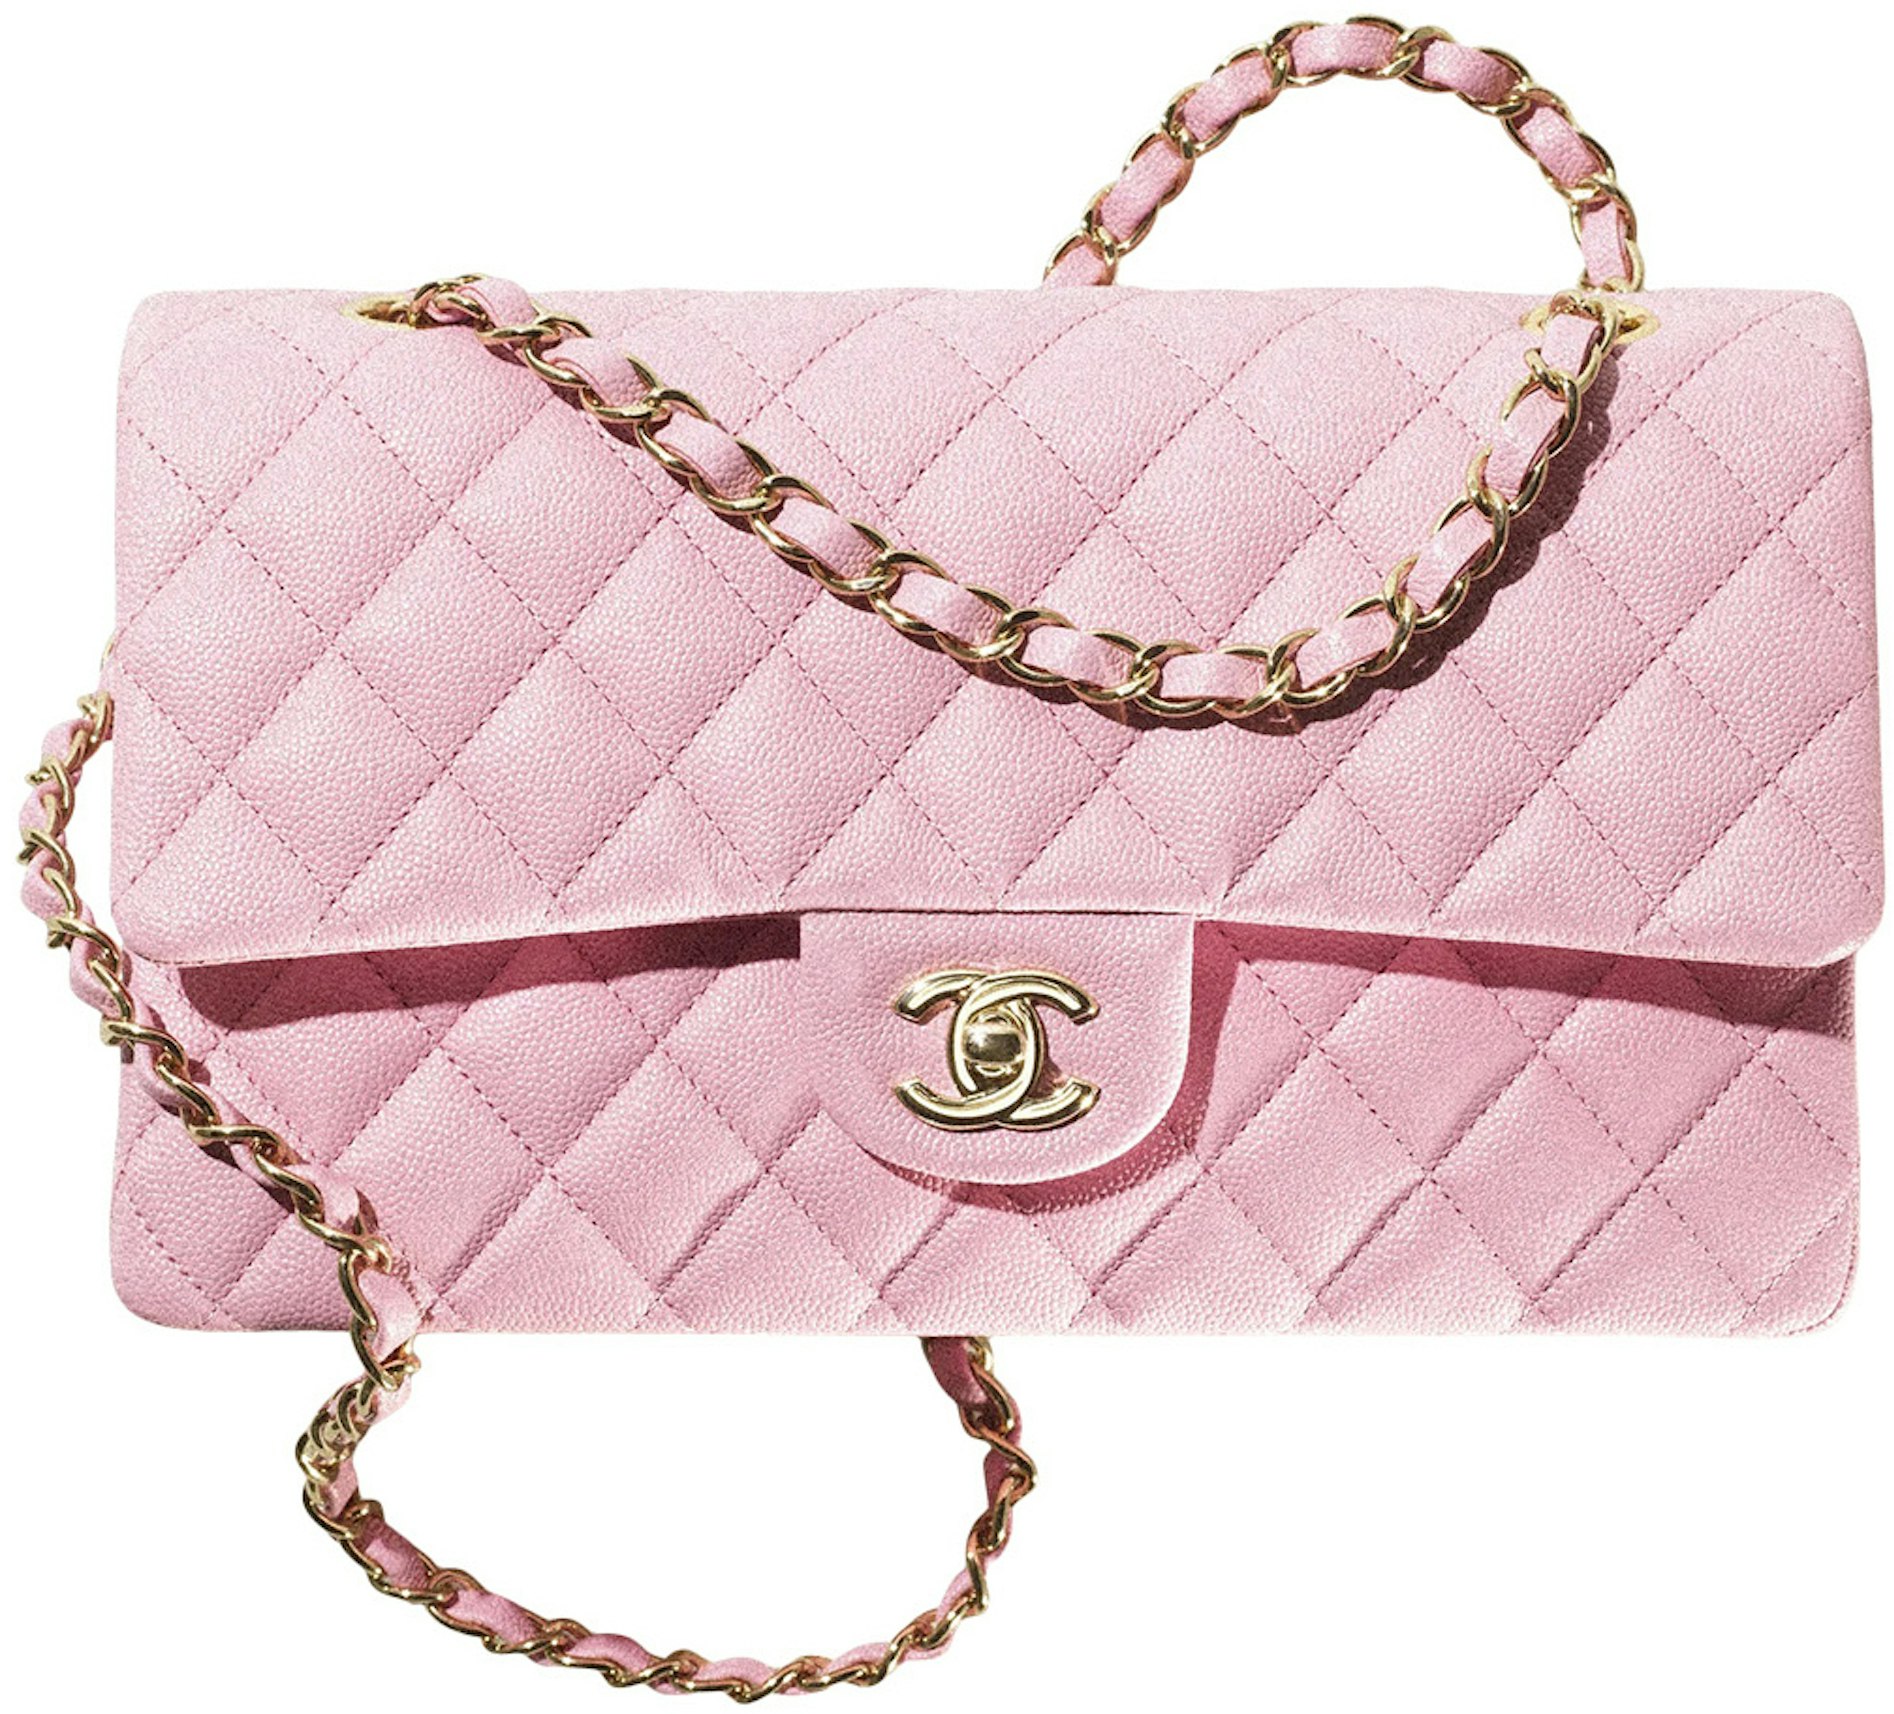 mærkelig bilag Premonition Chanel Classic Flap Handbag Medium 22S Calfskin Pink in Calfskin Leather  with Gold-tone - US